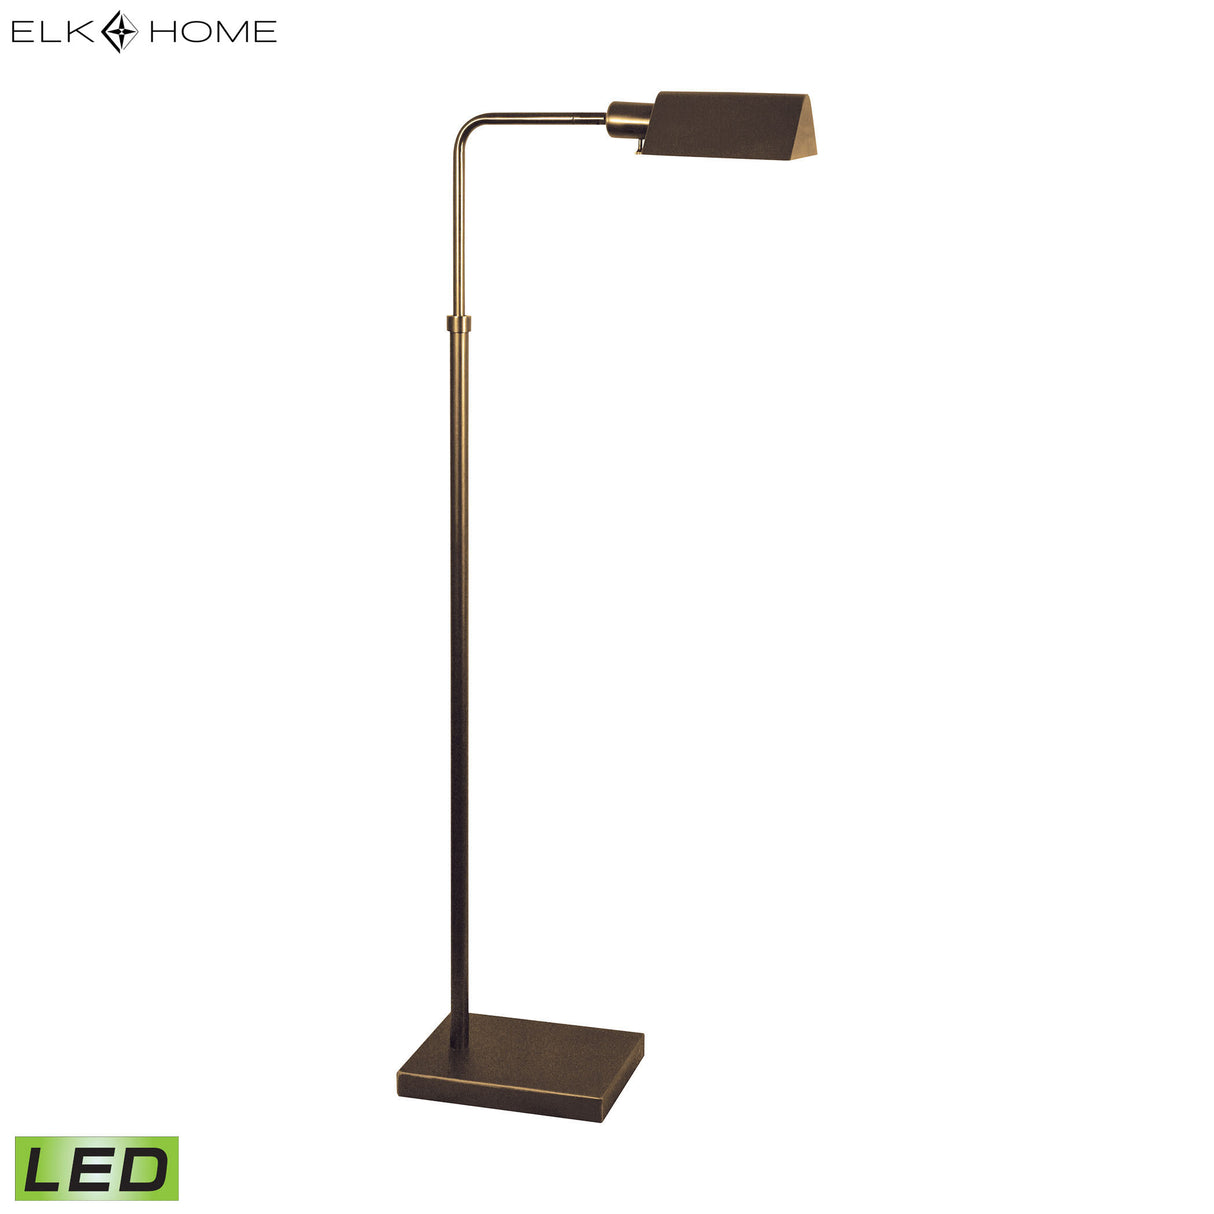 Elk 671-LED Pharmacy 42'' High 1-Light Floor Lamp - Bronze - Includes LED Bulb